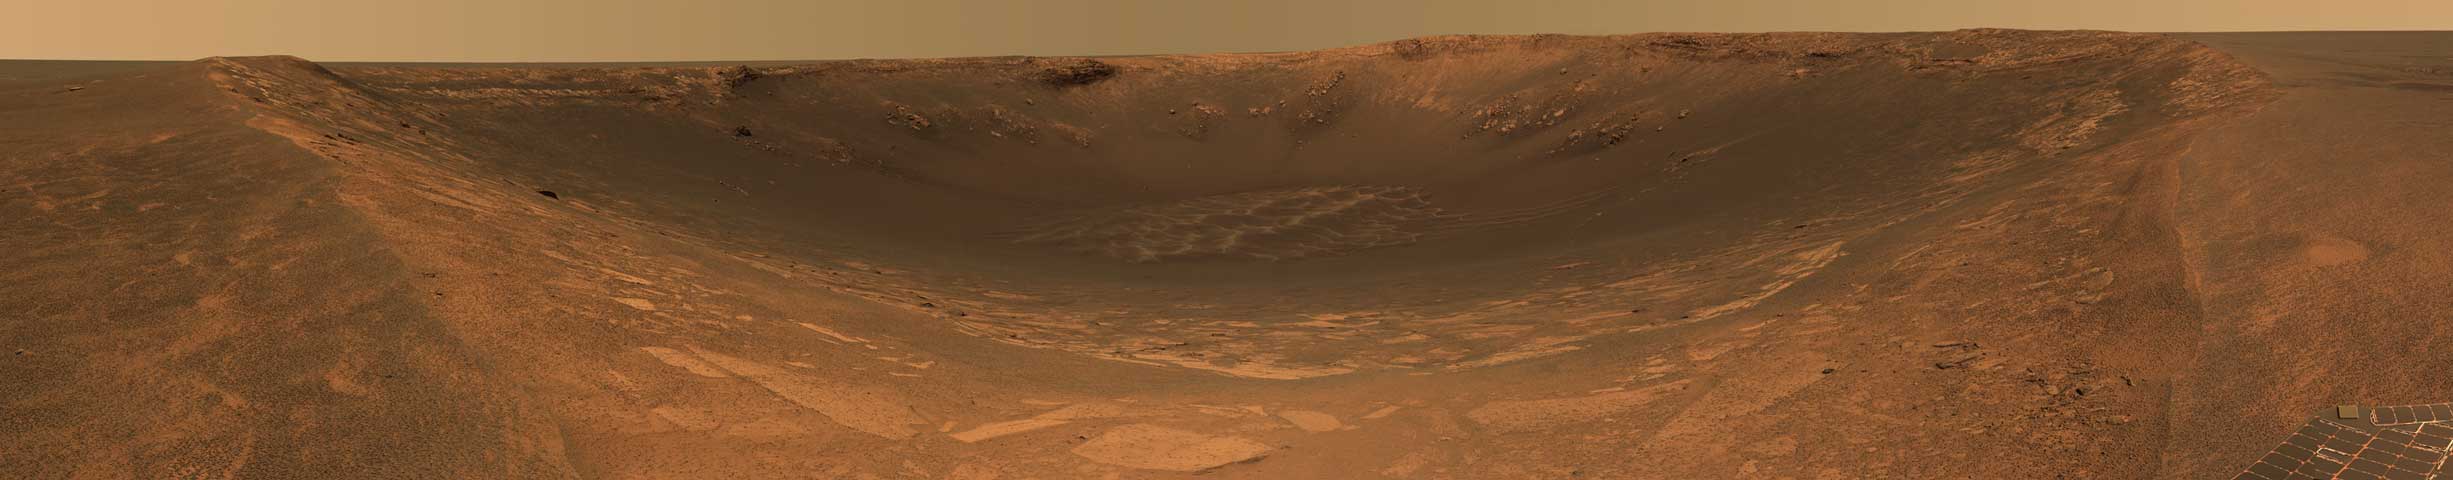 Endurance Cratere su Marte